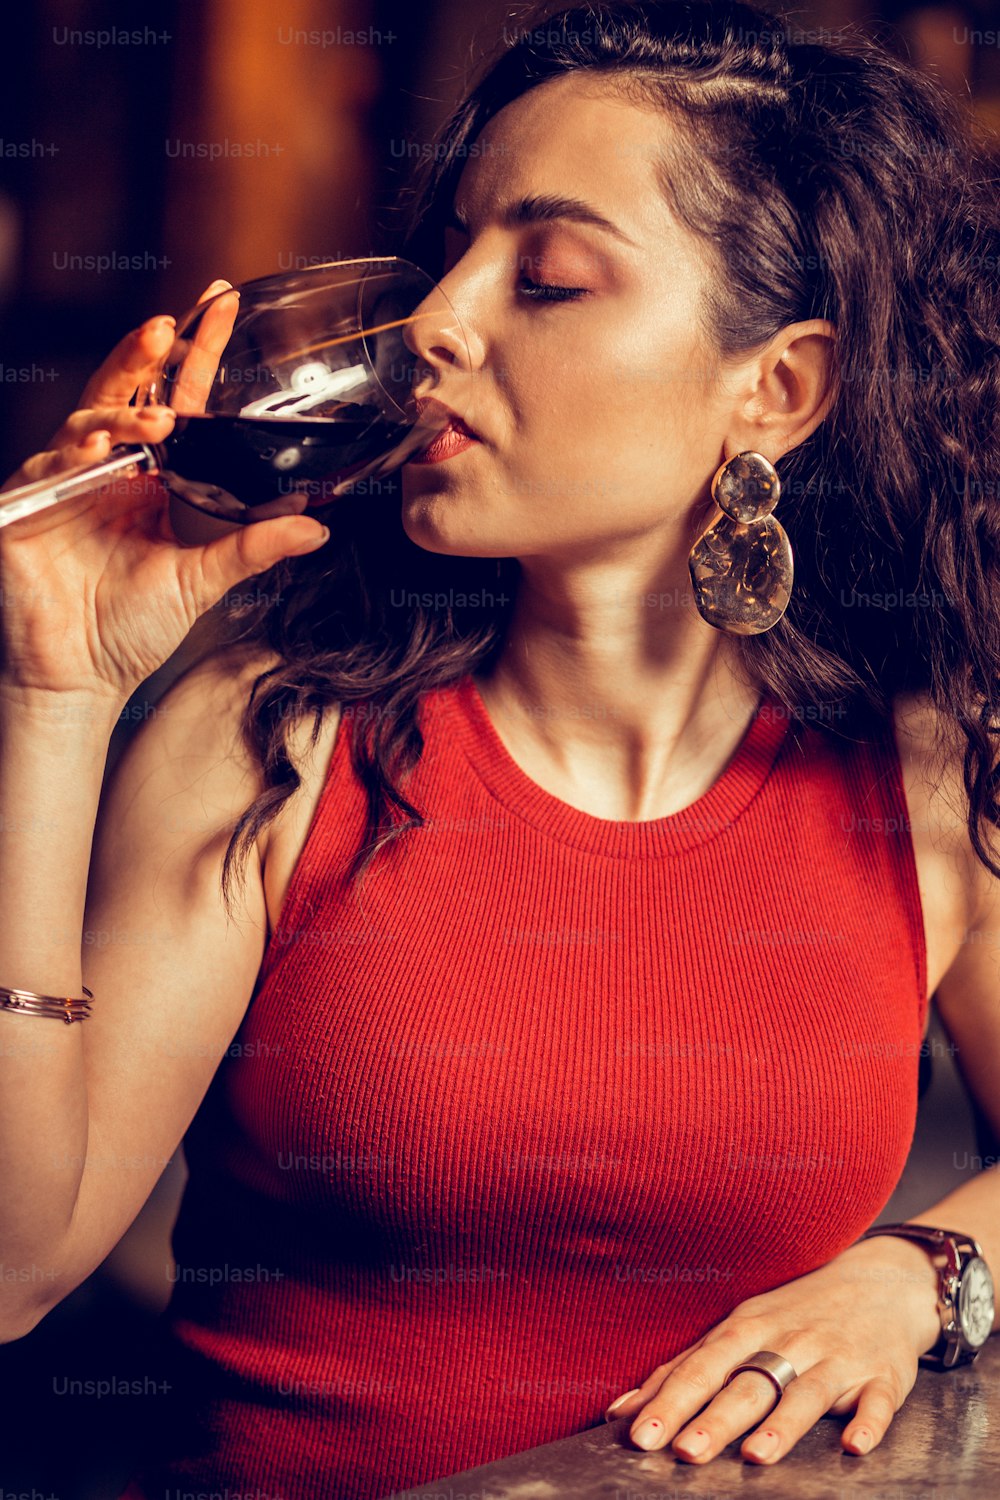 ワインを飲む。赤いドレスを着ている巻き毛の女性の接写バーで一人で座っている間、赤ワインを飲んでいます